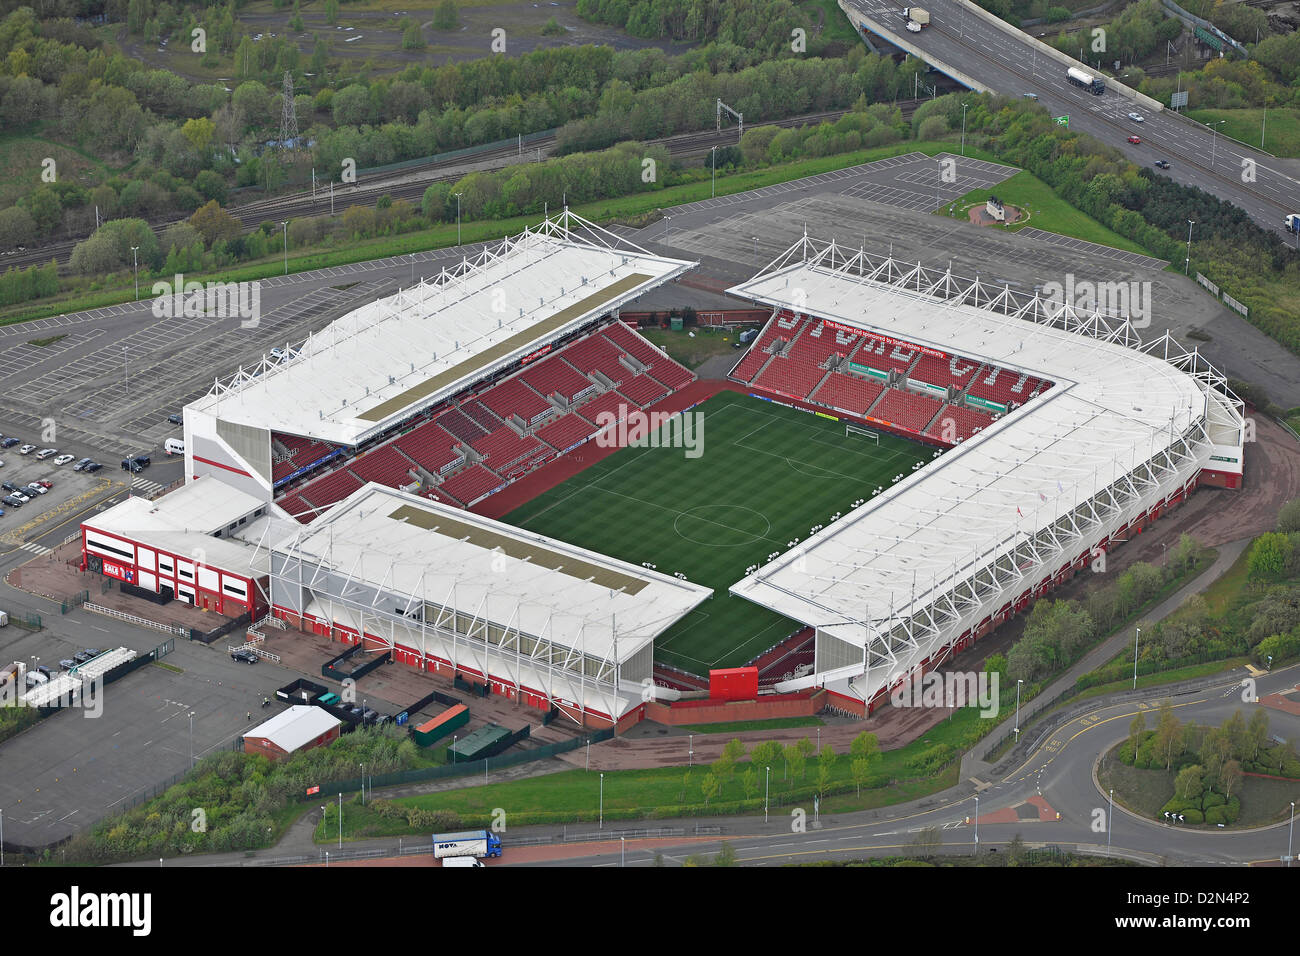 Aerial image of Stoke City's Britannia Stadium Stock Photo